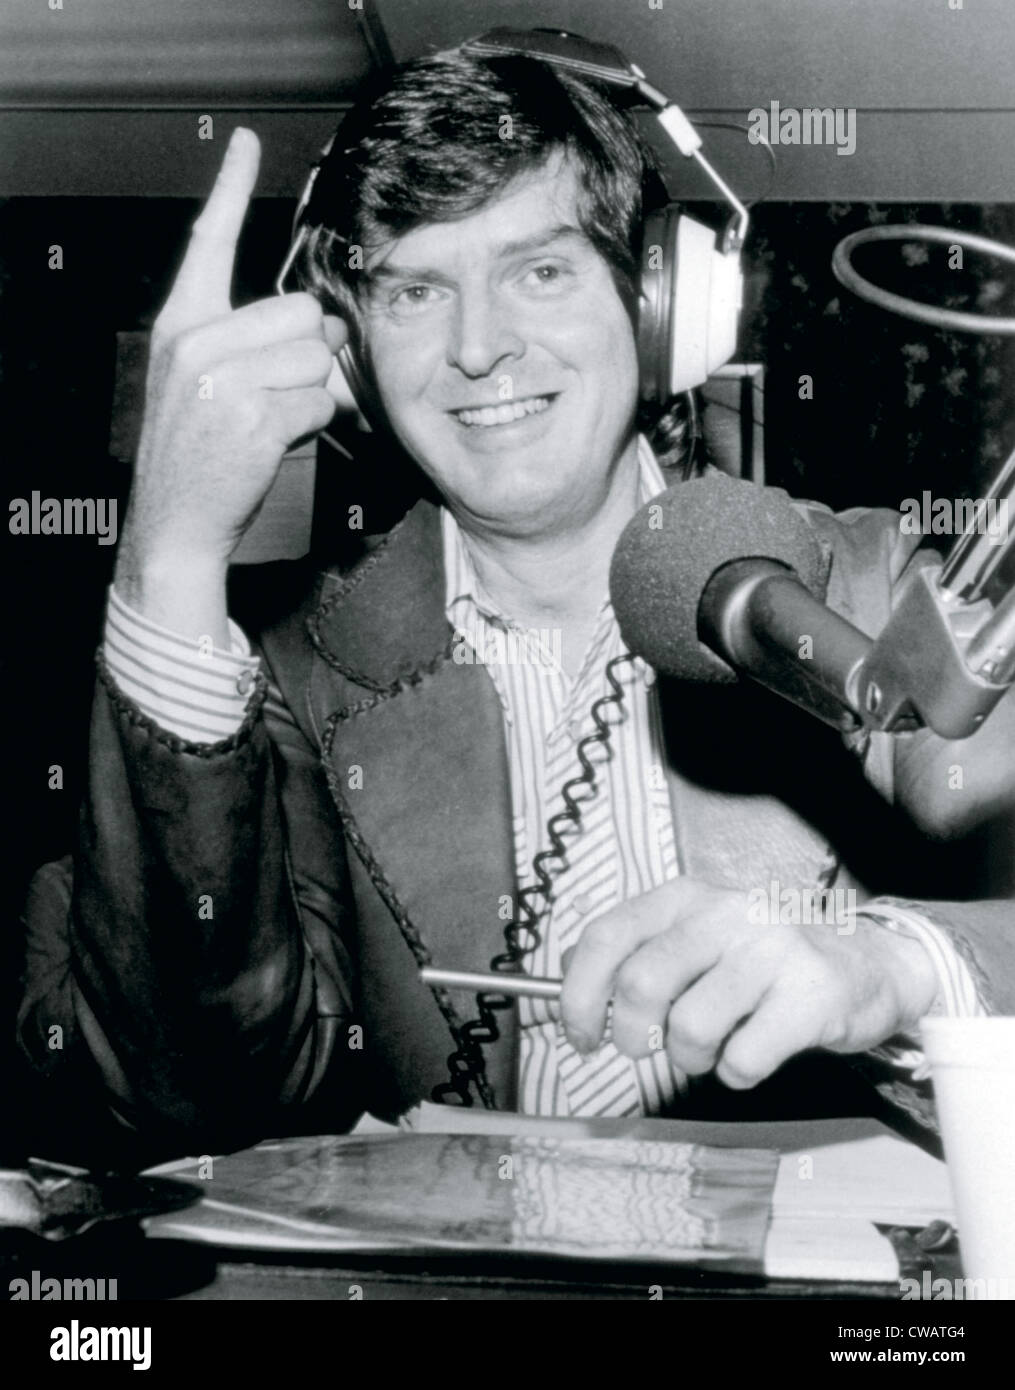 Don Imus, radio personalità, 1970s. La cortesia: CSU Archivi / Everett Collection Foto Stock